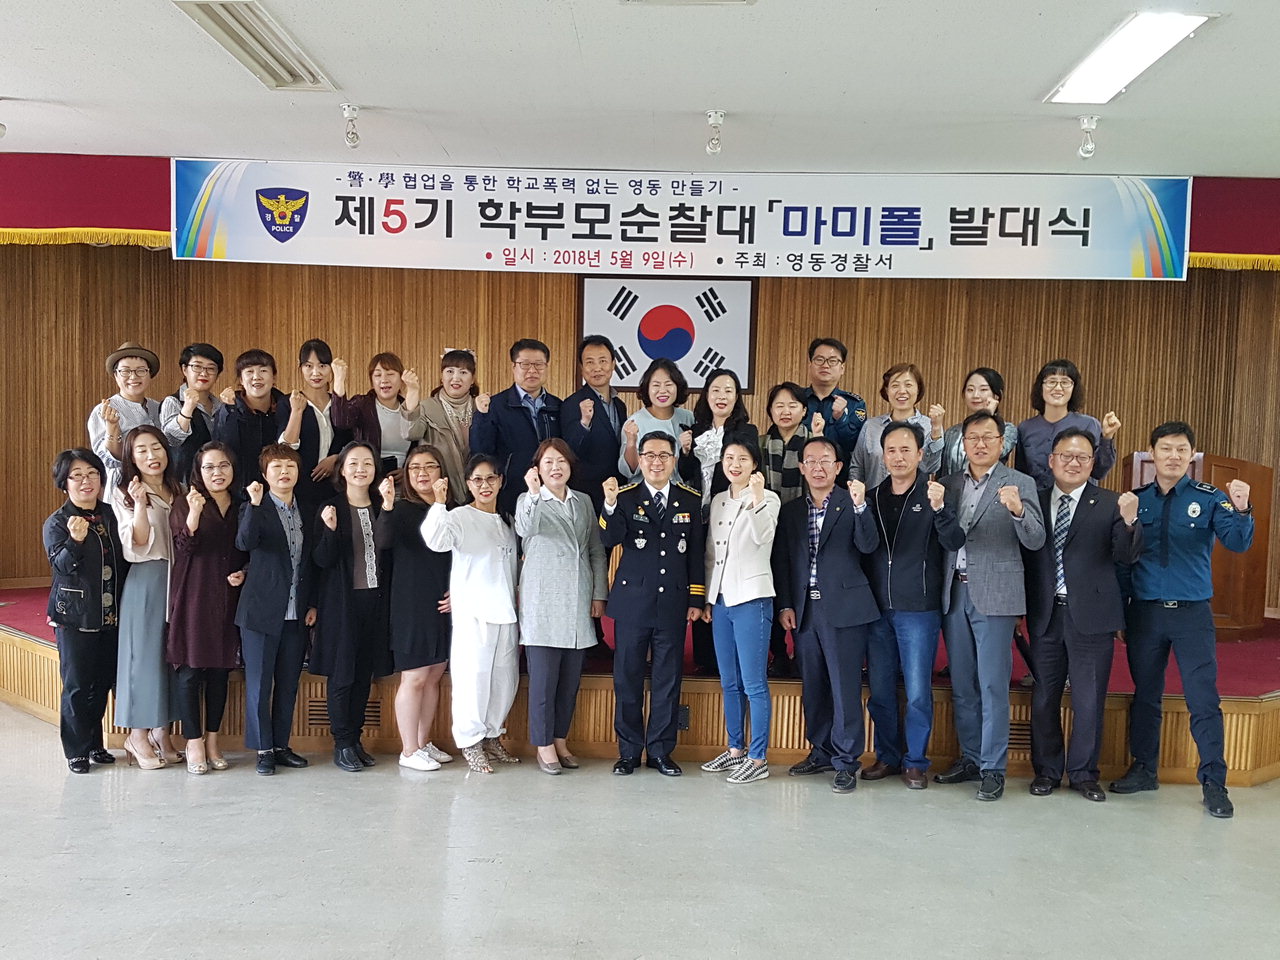 영동경찰서(서장 김상문)는 9일 영동경찰서 3층 대회의실에서 학부모순찰대 '마미폴' 제5기 발대식을 개최했다.